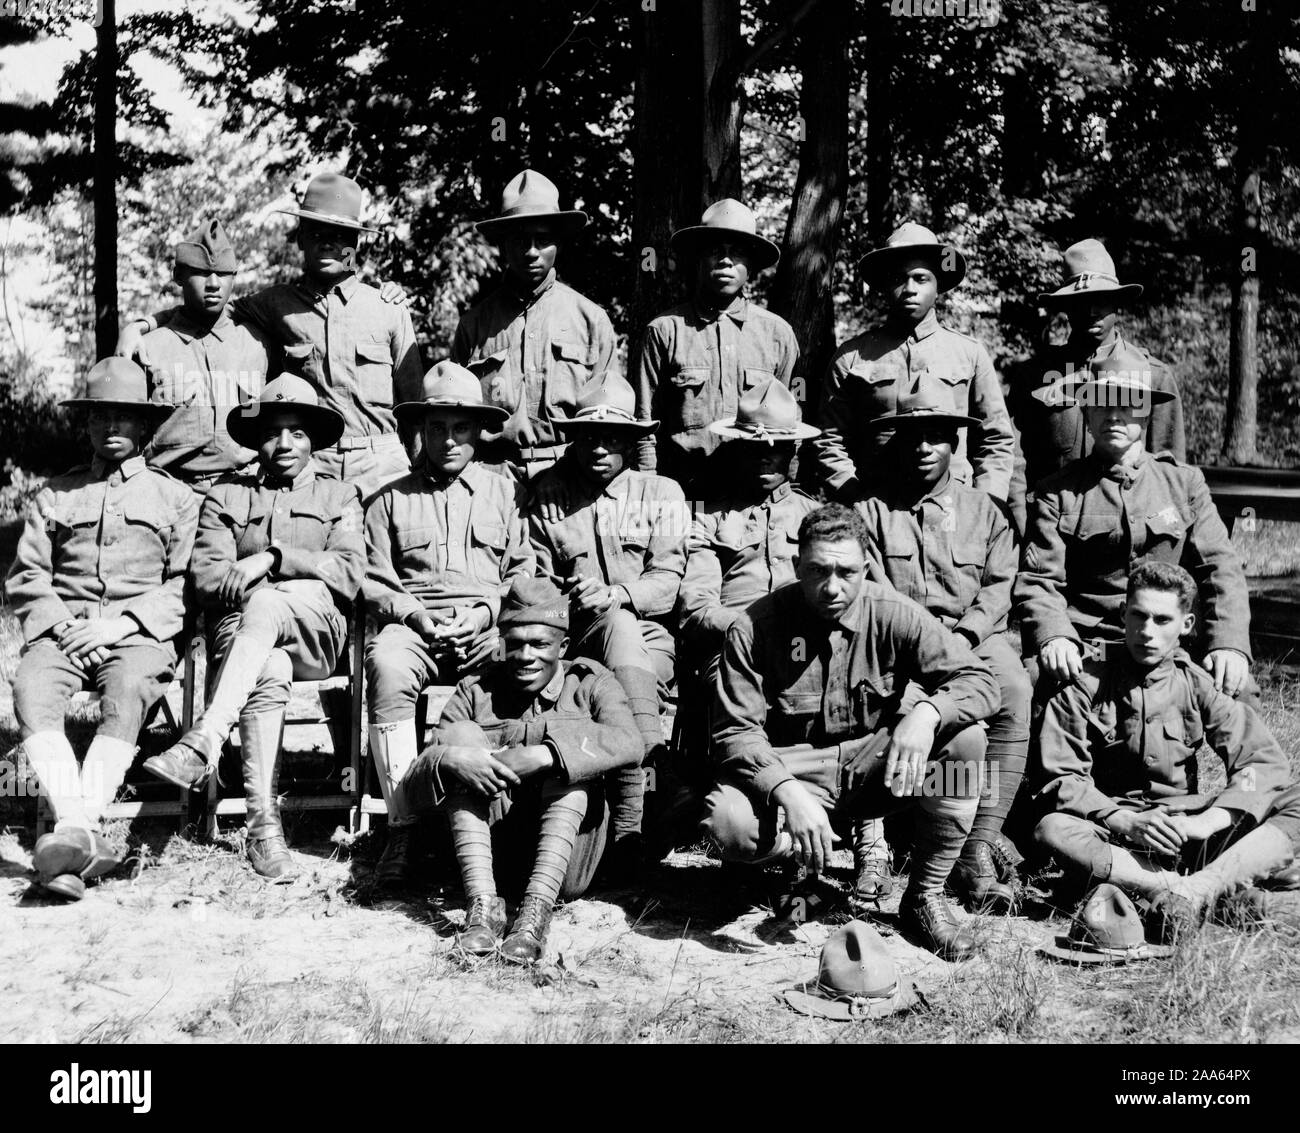 WW ich Fotos - Farbig/Afrikanische amerikanische Truppen - plattsburg Ausbildungslager, New York. Krankenhaus Corps ablösen kann. 1917-1918 Stockfoto